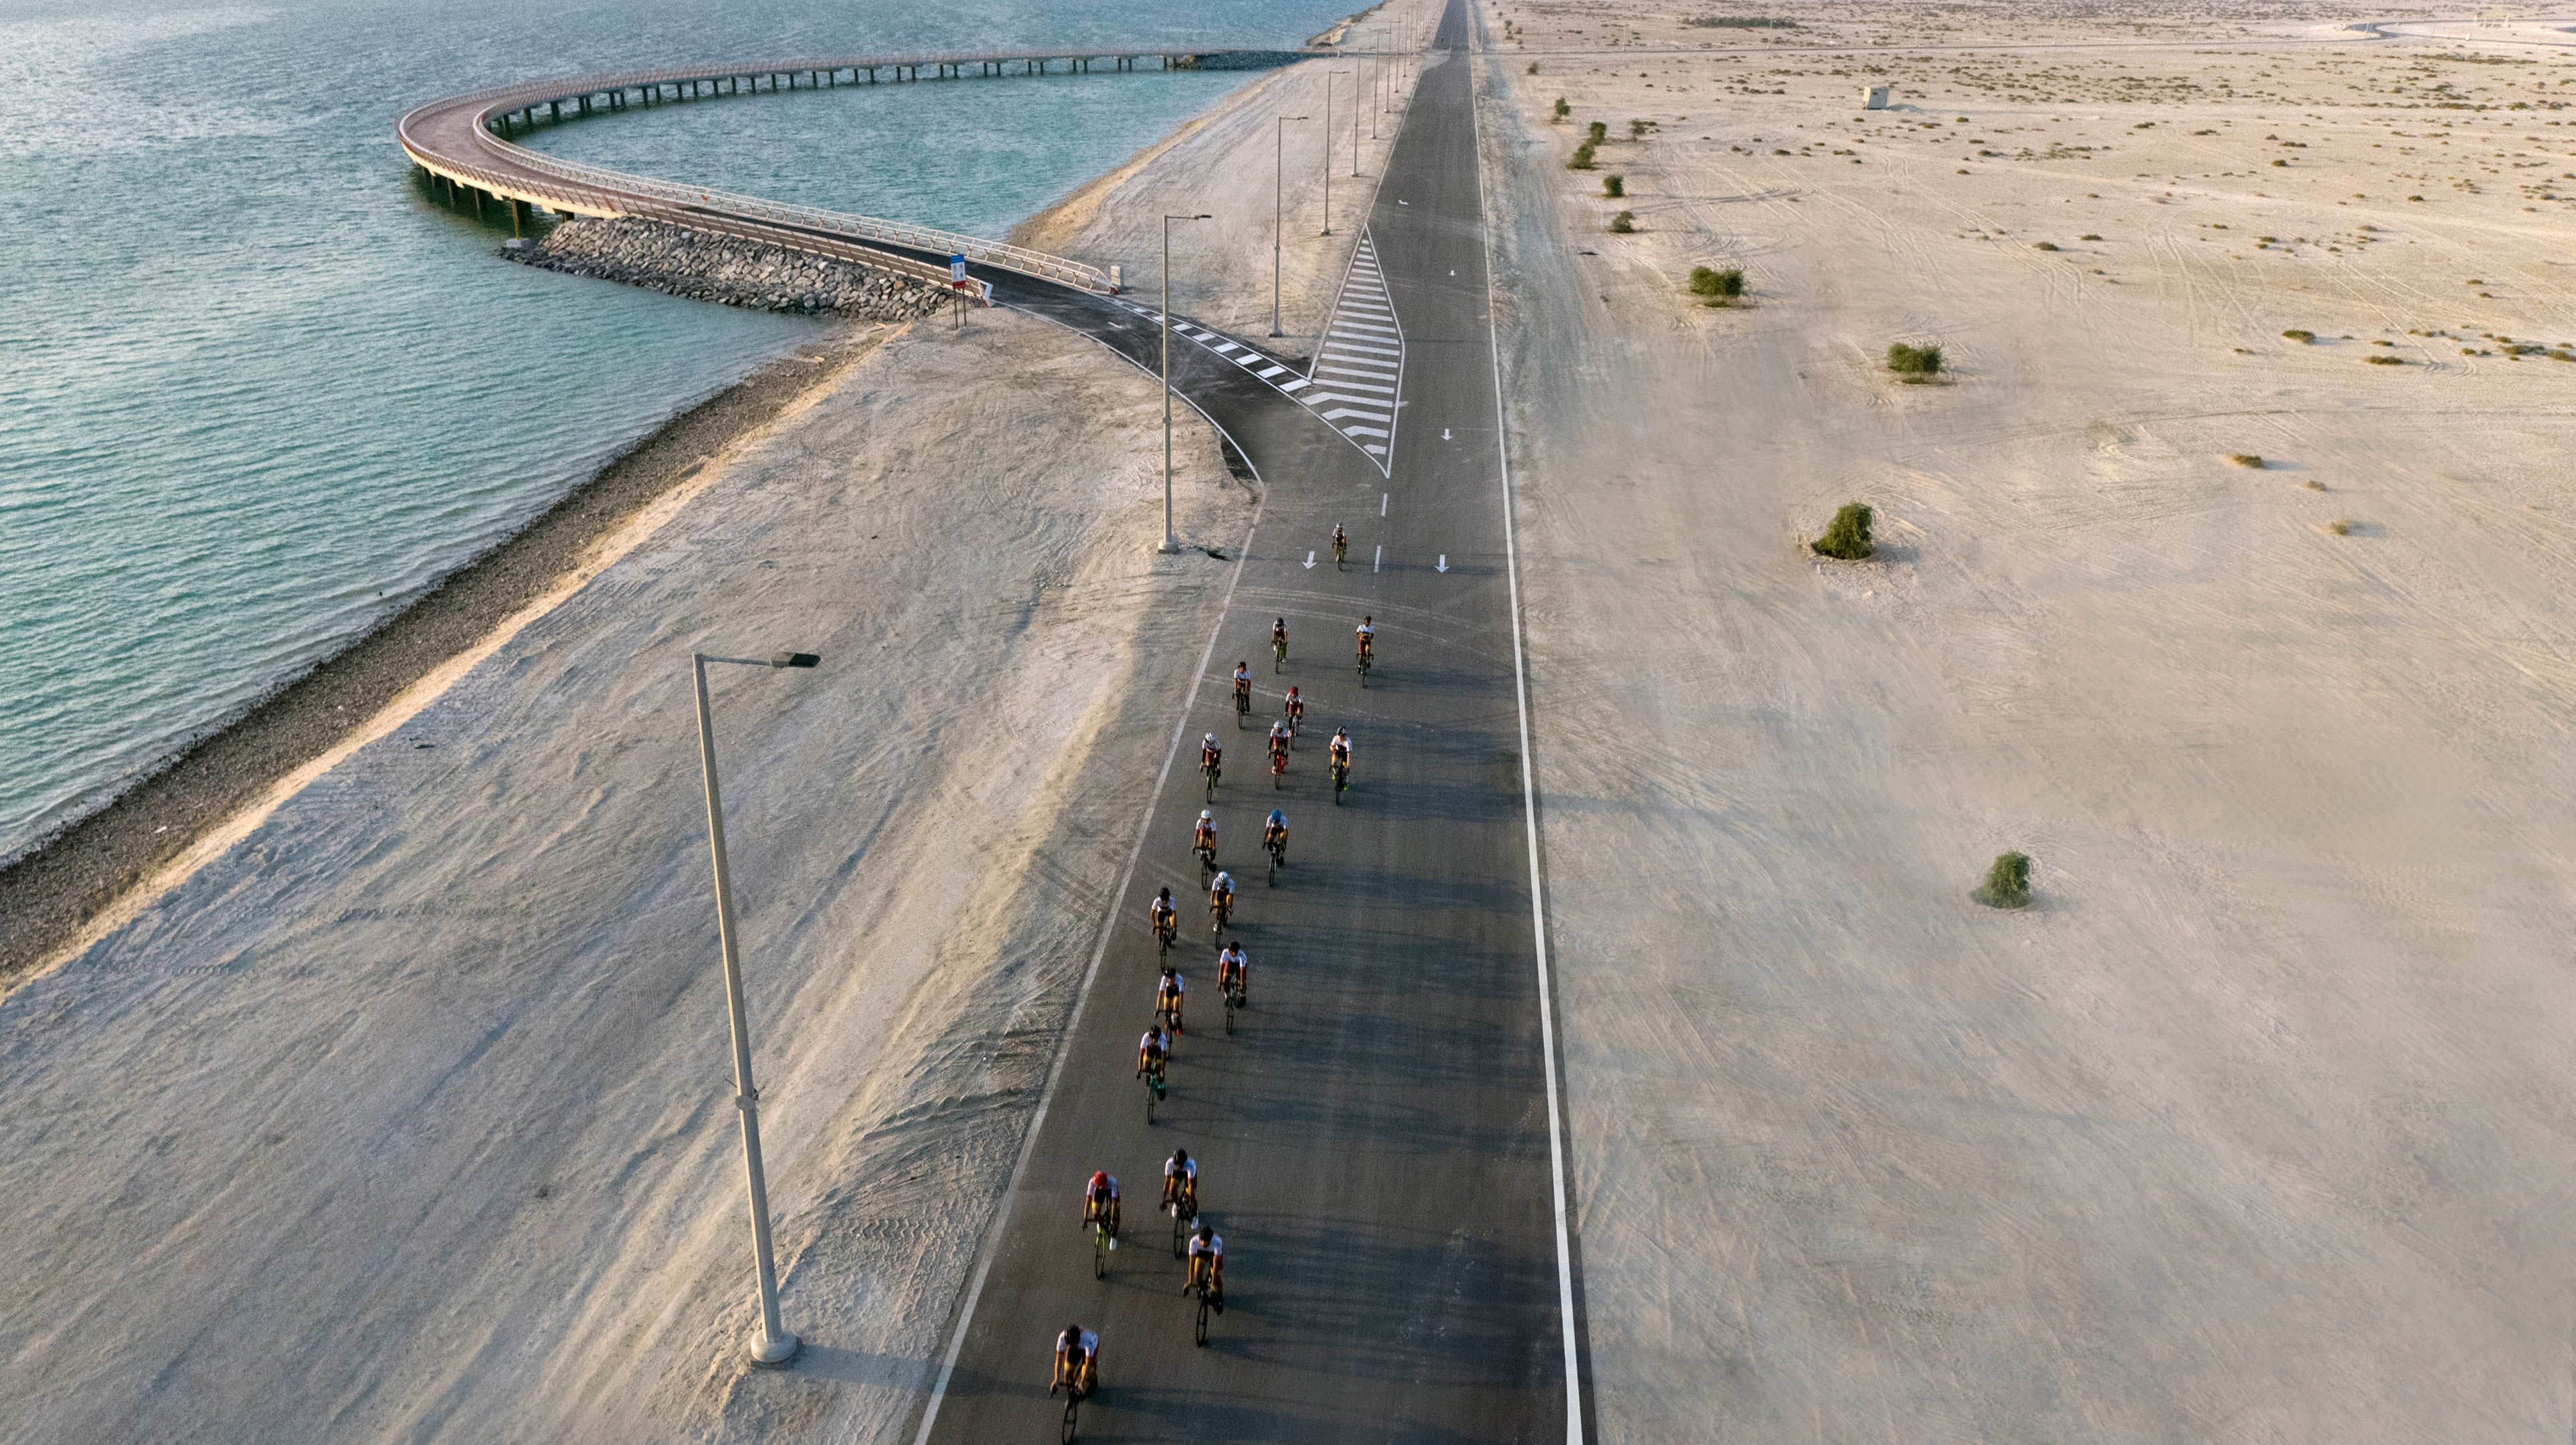 Cycling on Al Hudayriat Island in Abu Dhabi